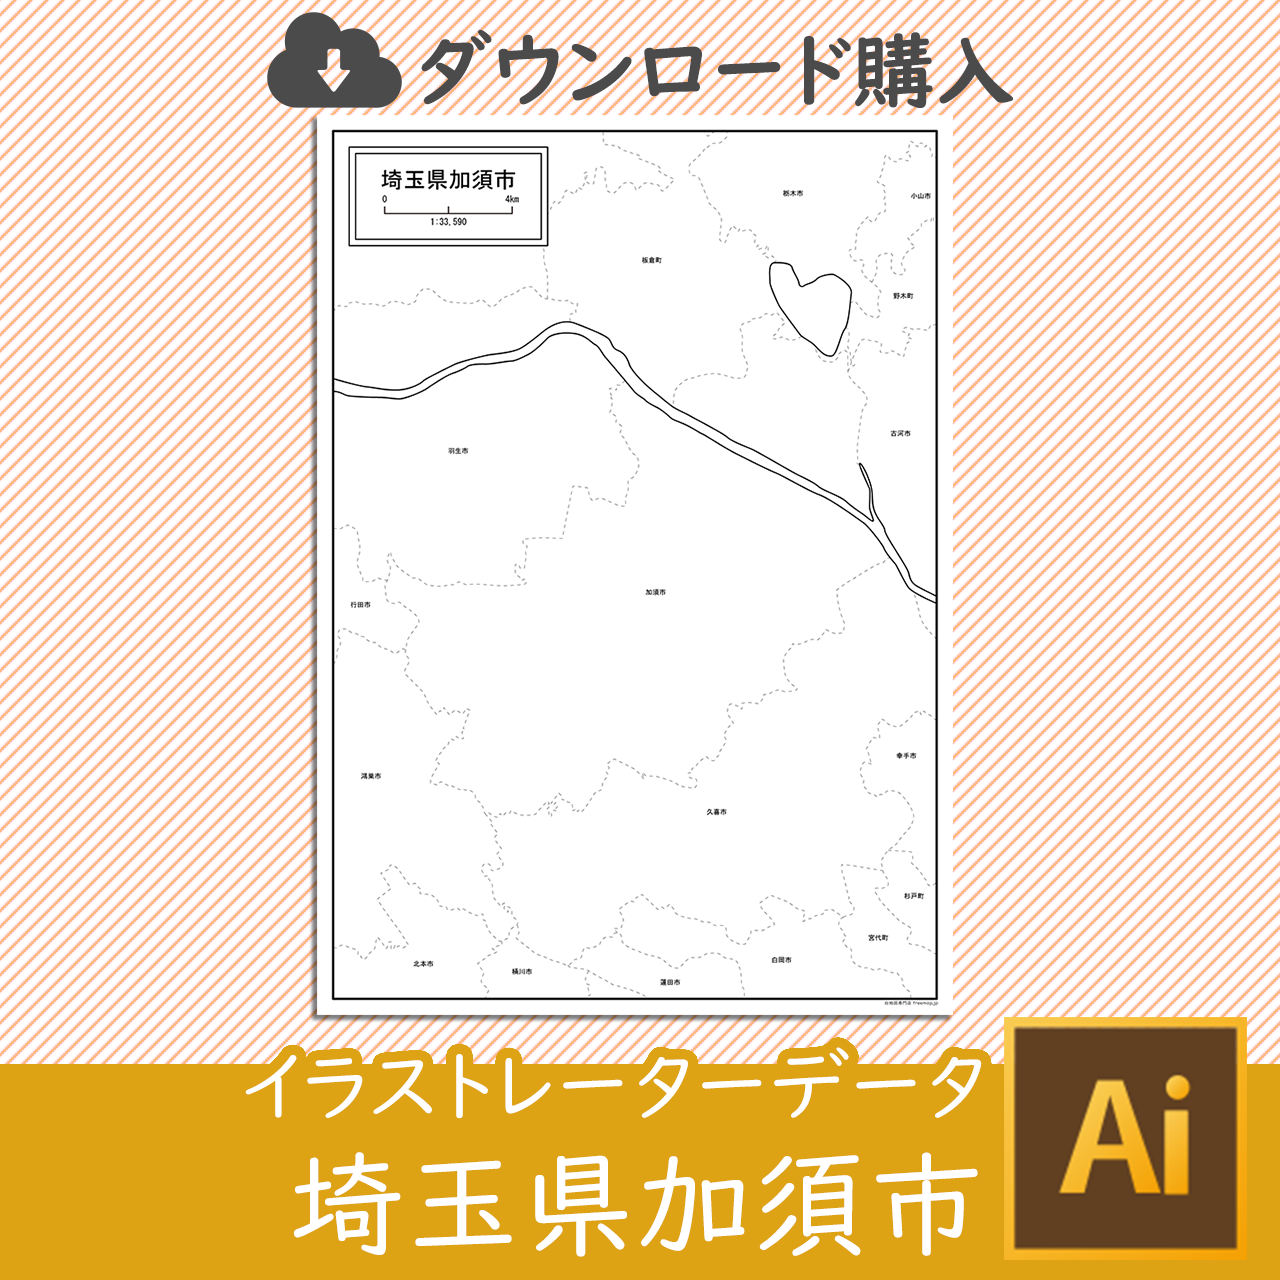 加須市のaiデータのサムネイル画像